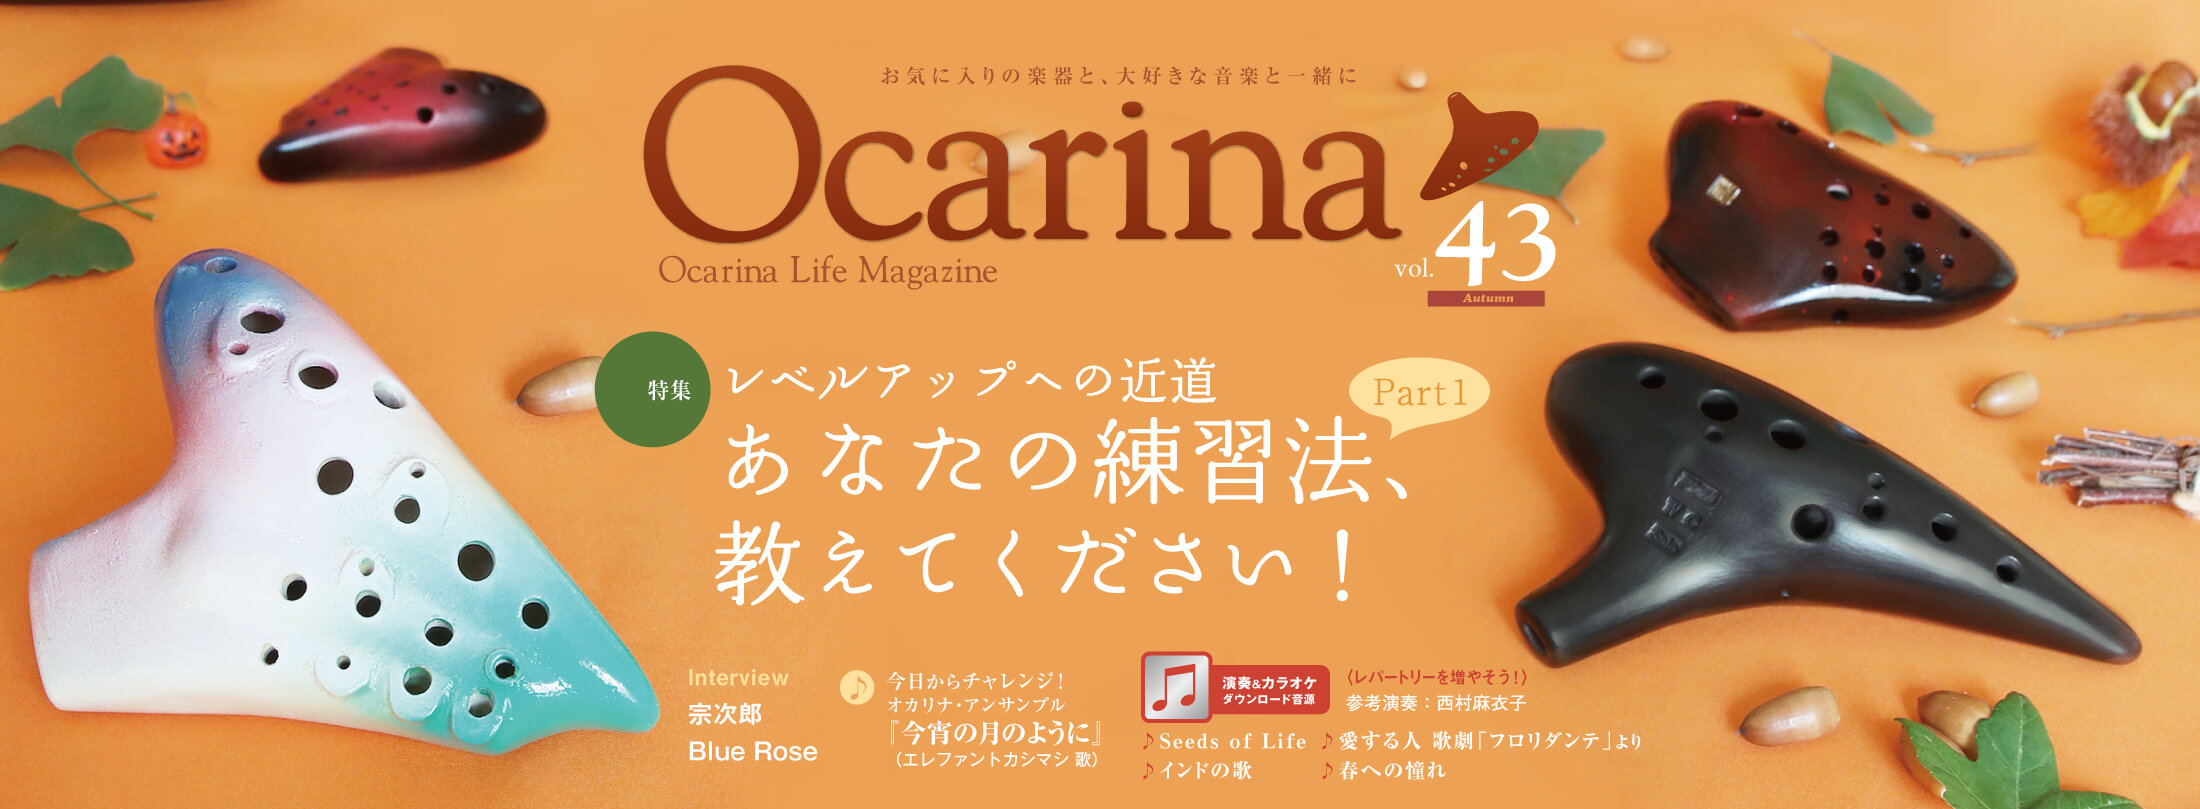 Ocarina43